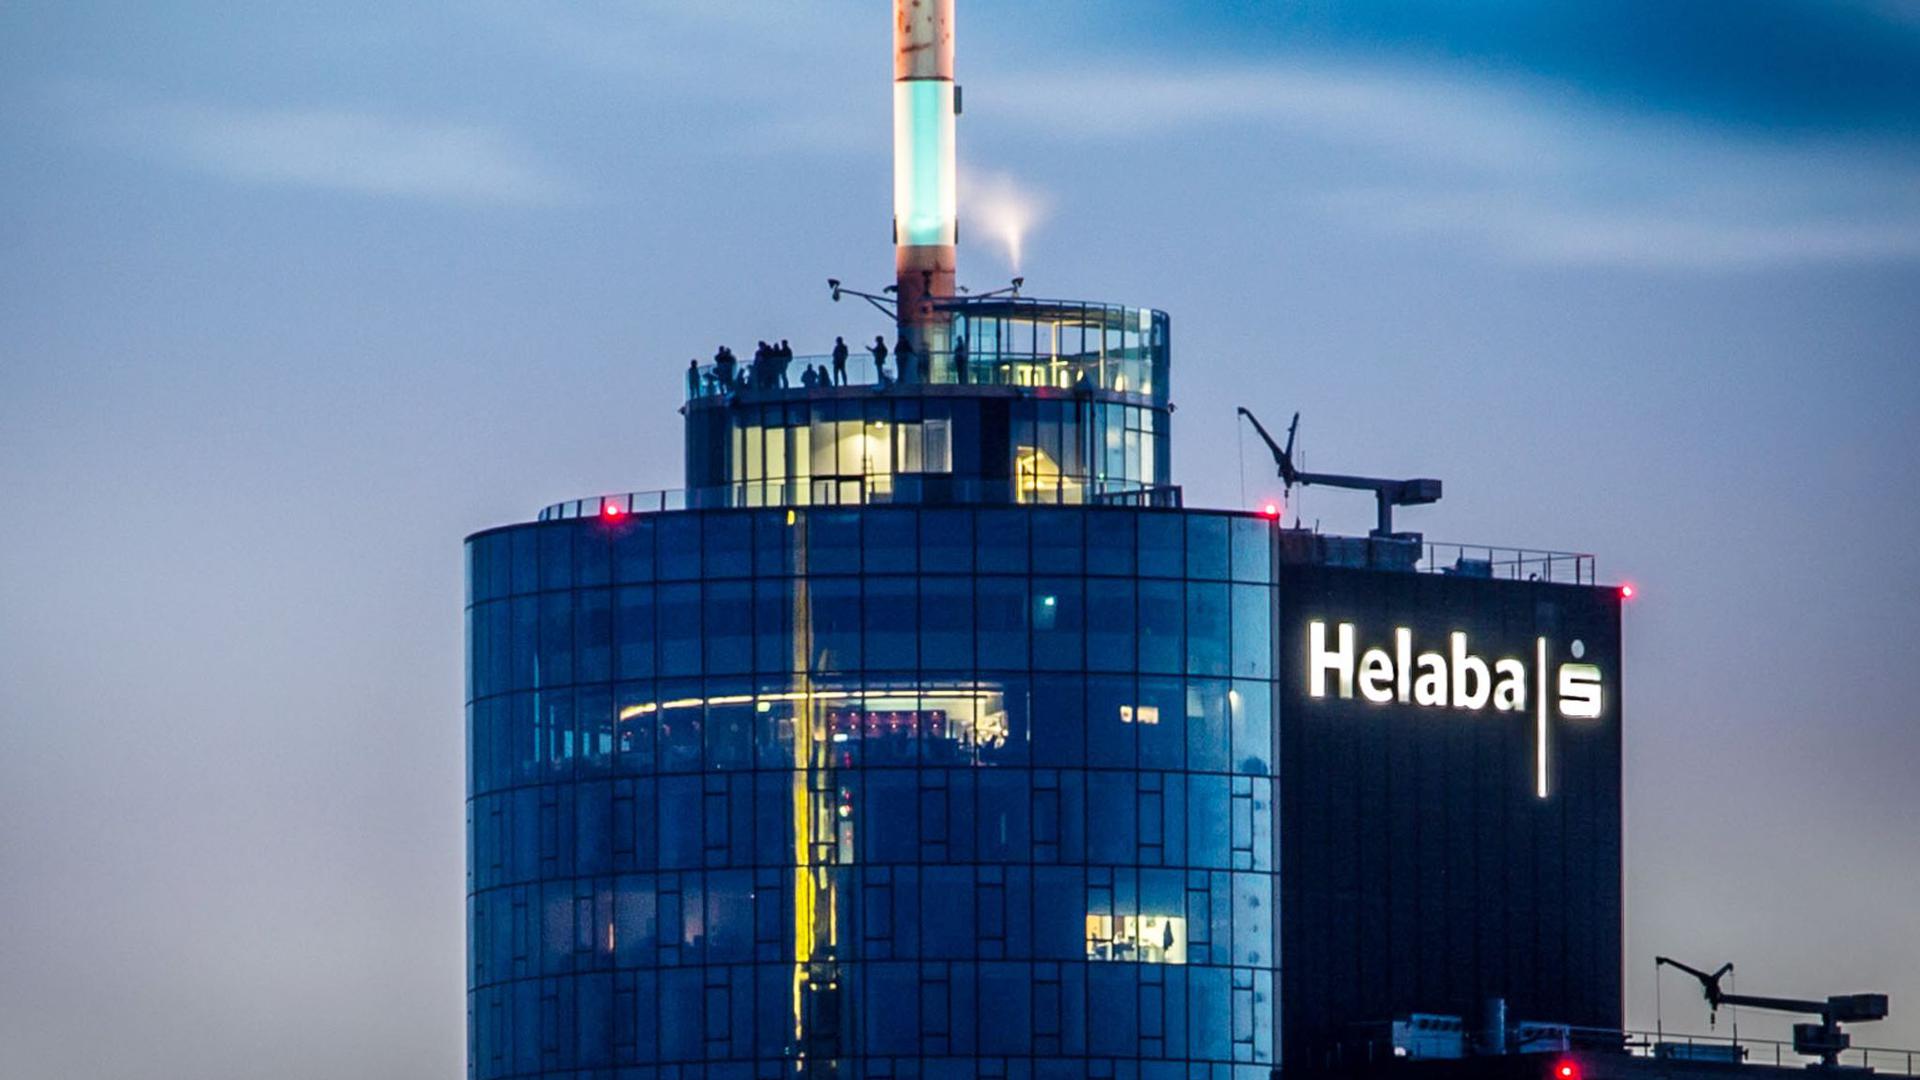 Besucher stehen abends in rund 198 Metern Höhe auf der Aussichtsterrasse des Main Towers, der auch die Landesbank Hessen-Thüringen (Helaba) beherbergt.